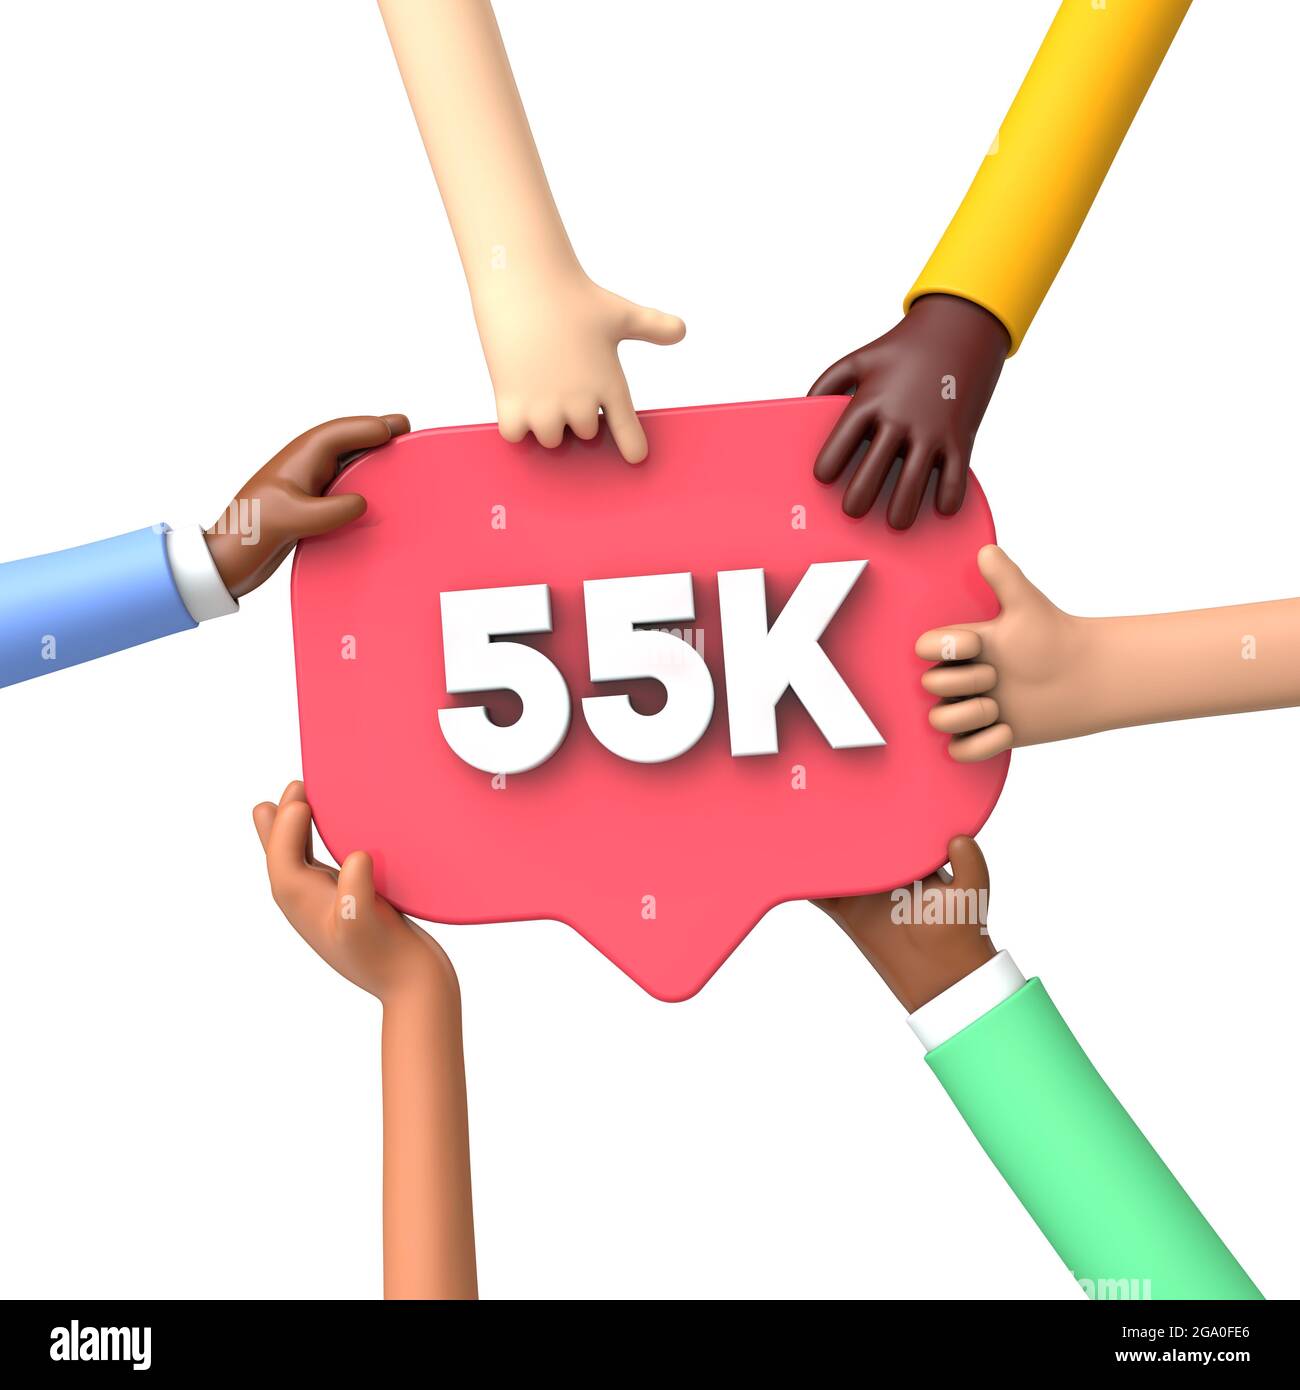 Mani che tengono un'etichetta di banner dei social media 55k. Rendering 3D Foto Stock